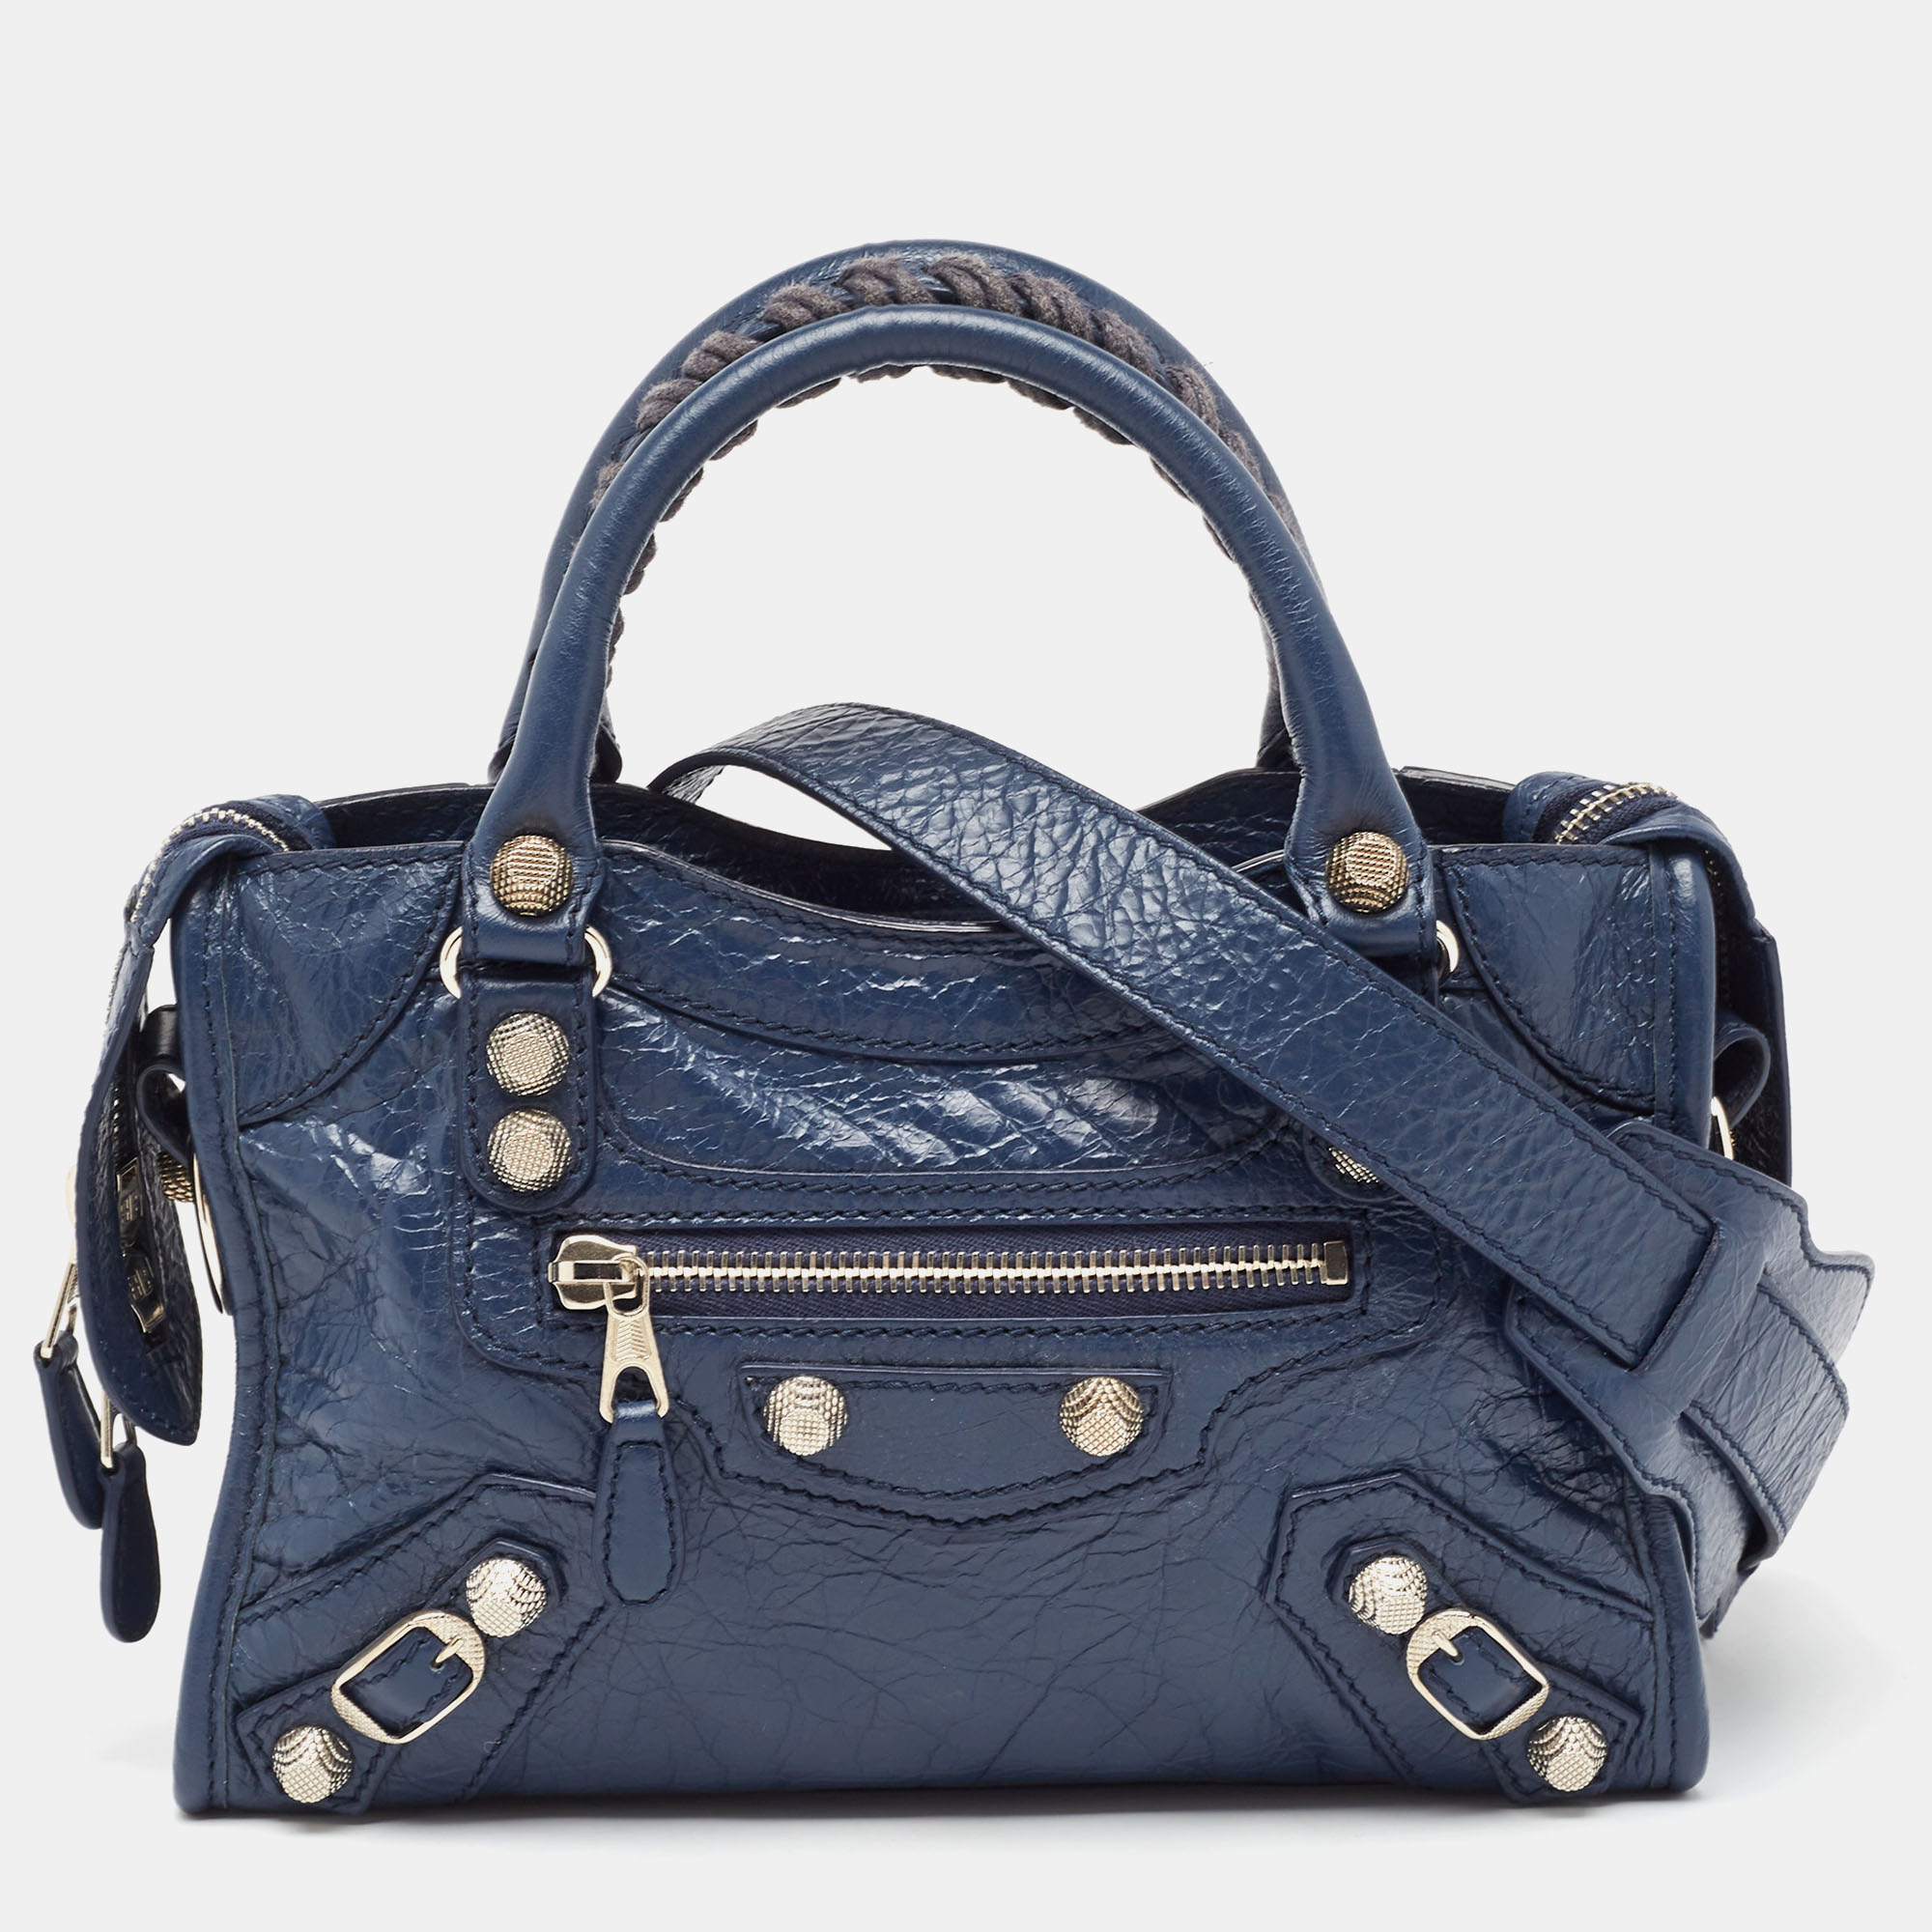 Balenciaga blue leather mini classic city bag